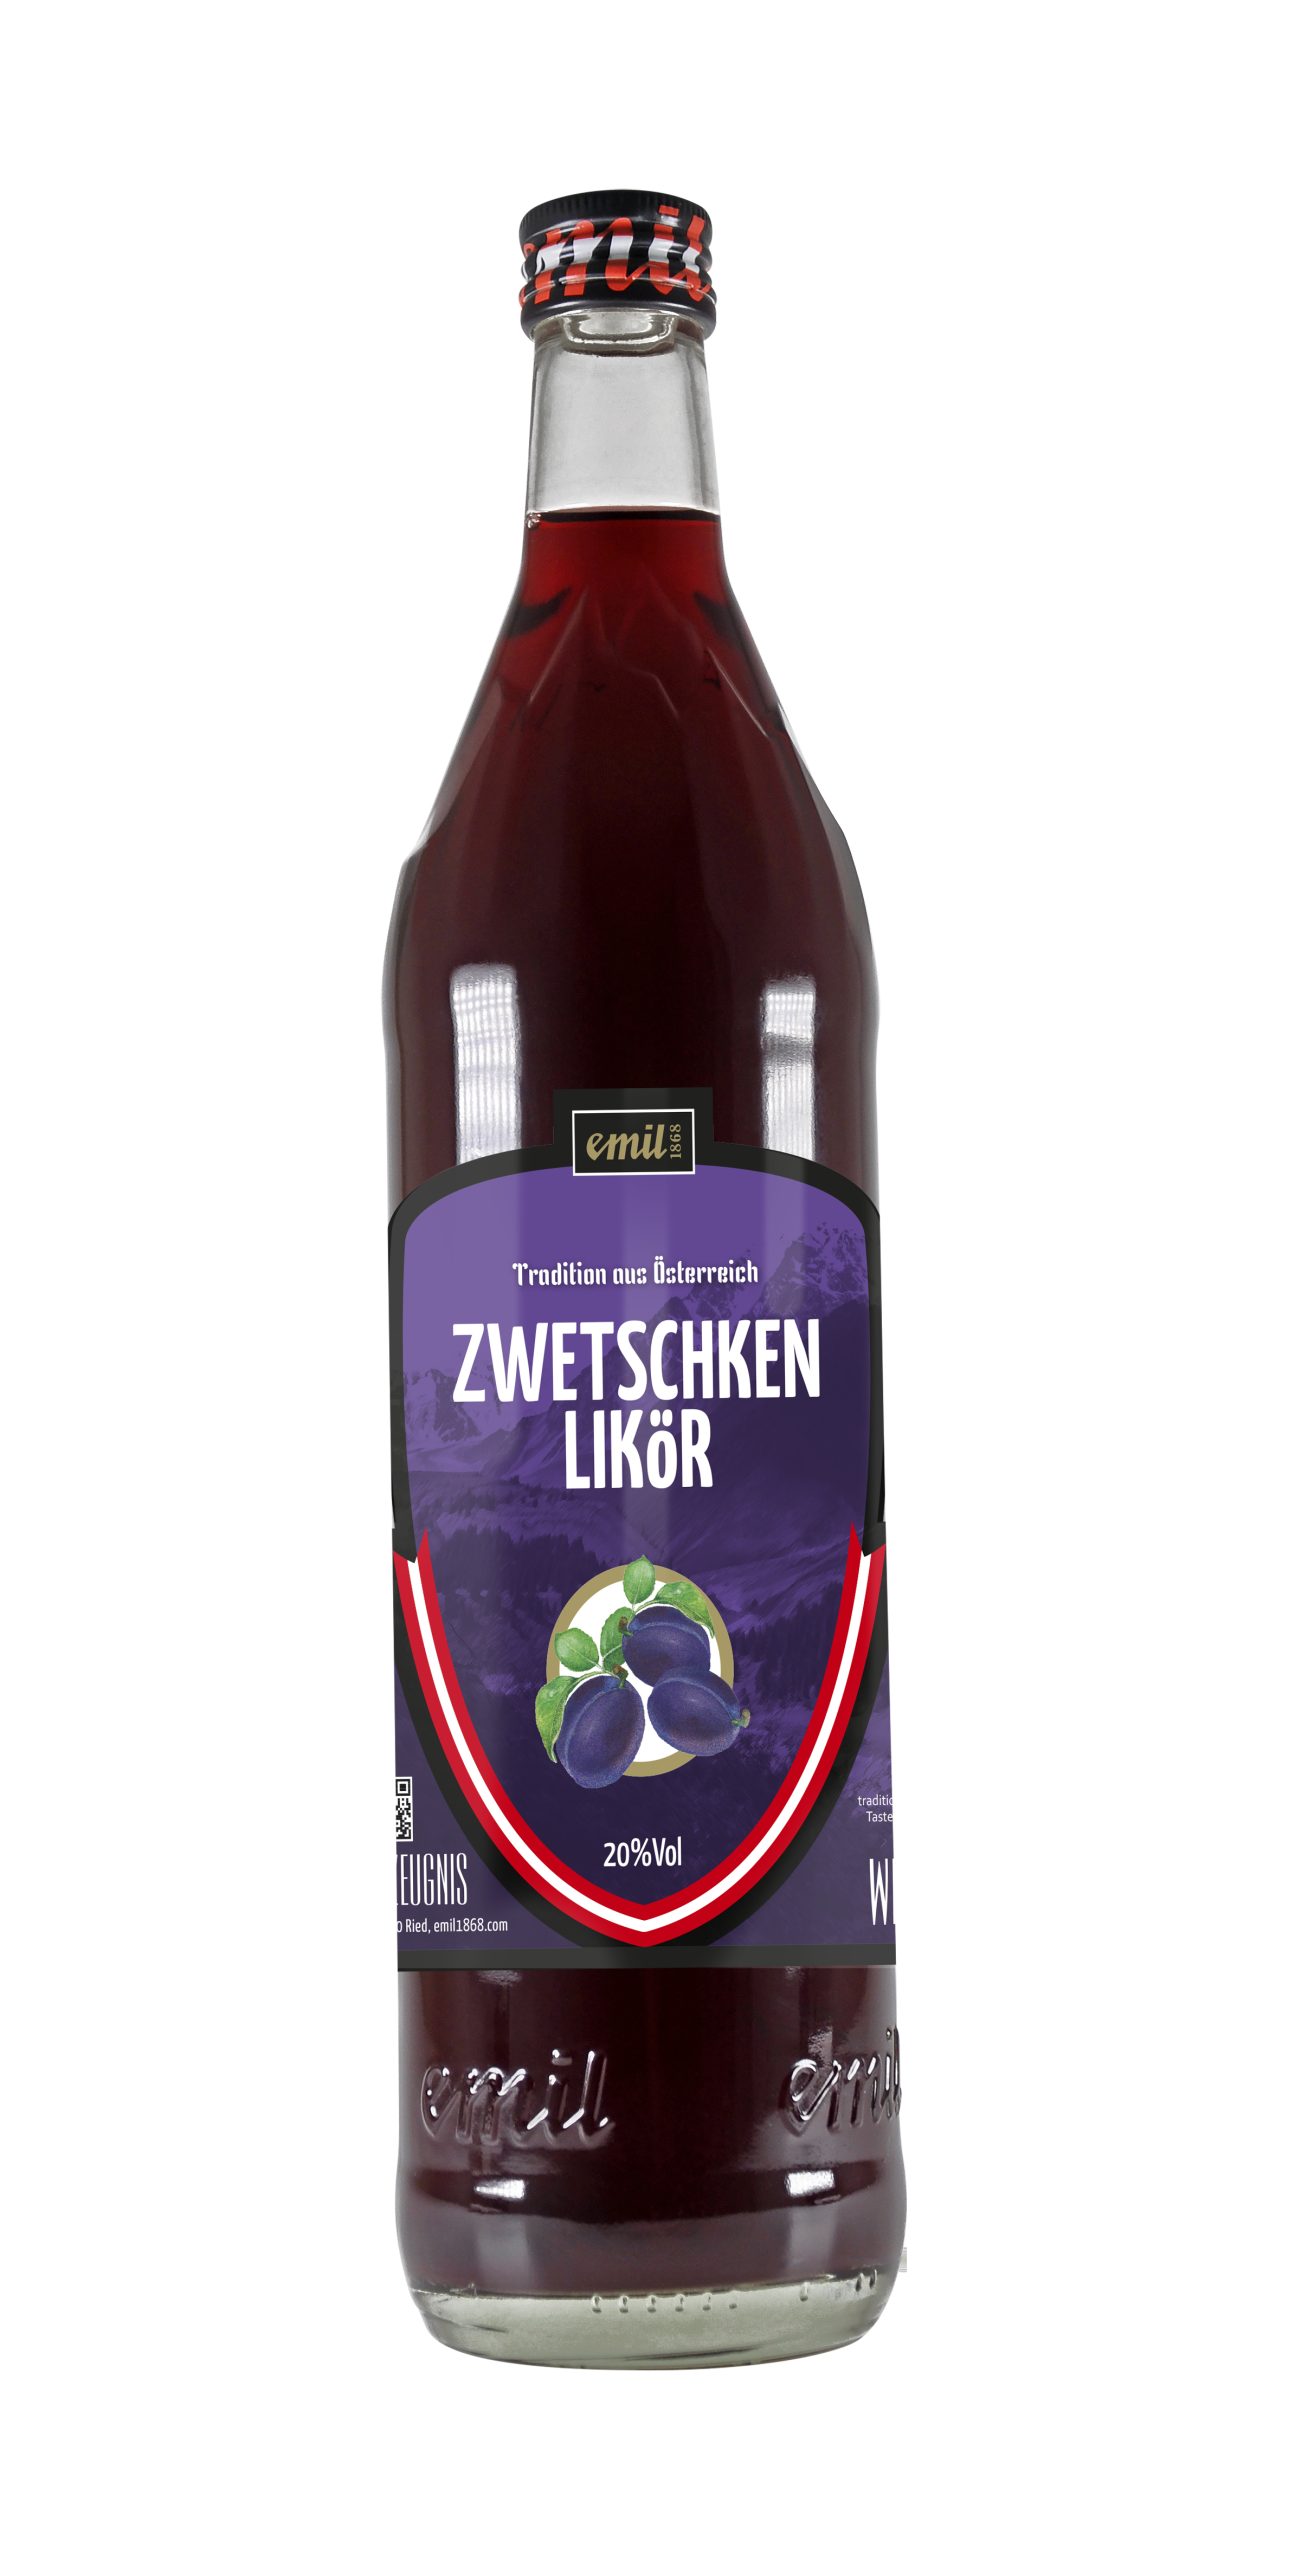 Tradition aus Österreich, emil 1868 Zwetschken Likör in der 0,7 Liter Flasche